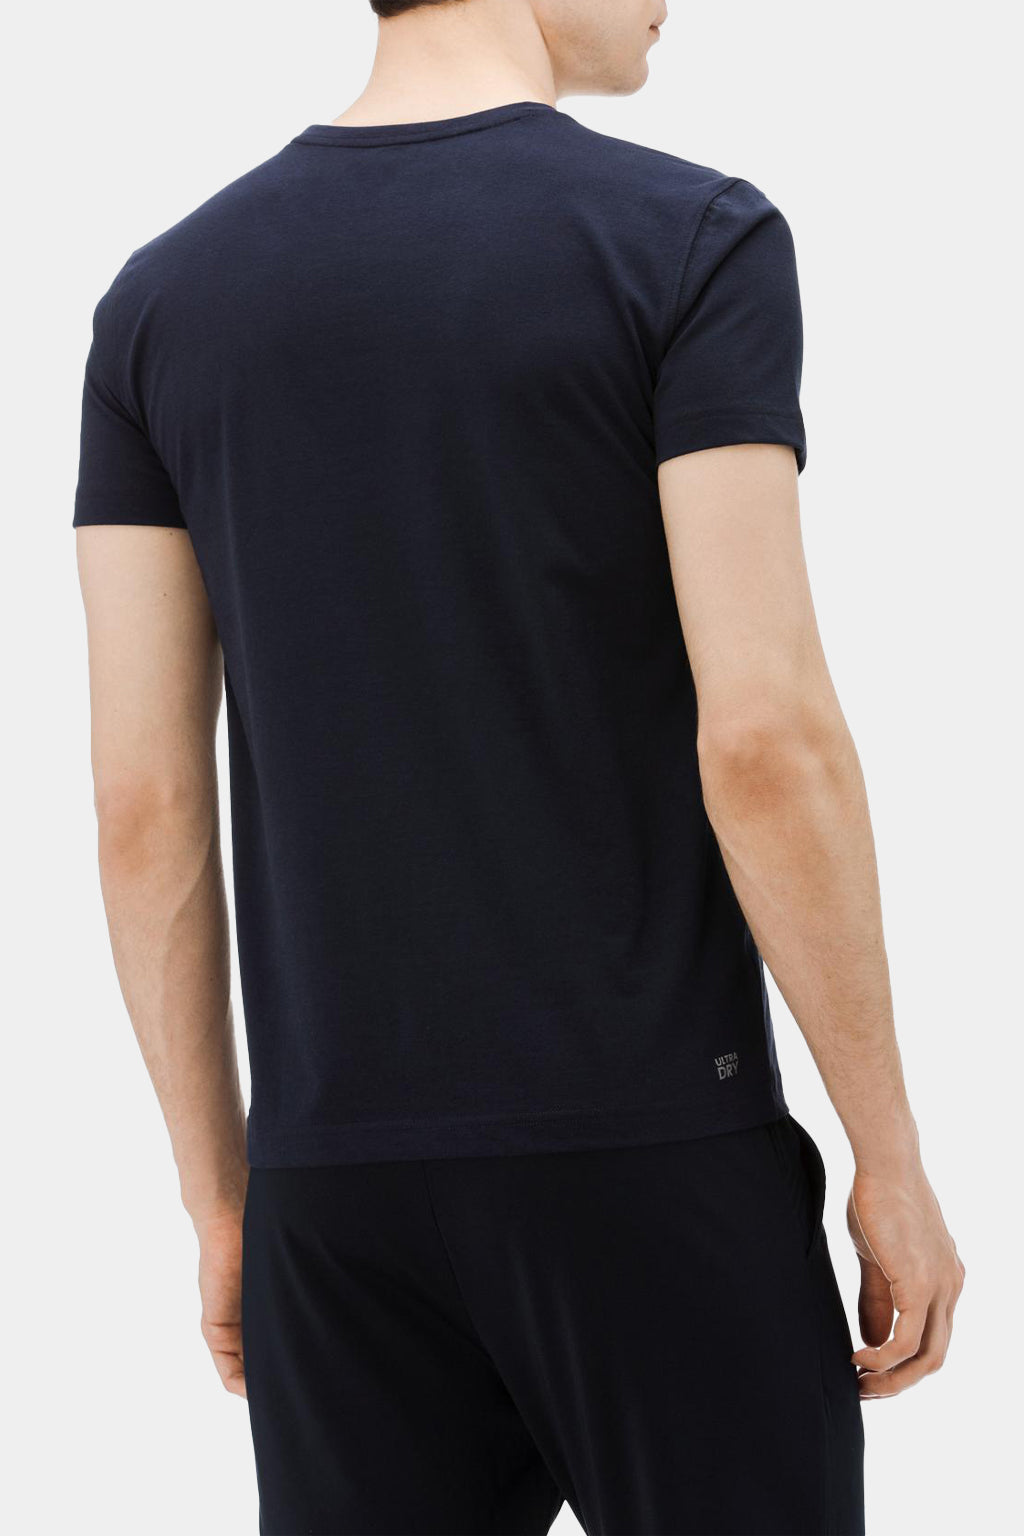 Lacoste - Sport Men's T-Shirt